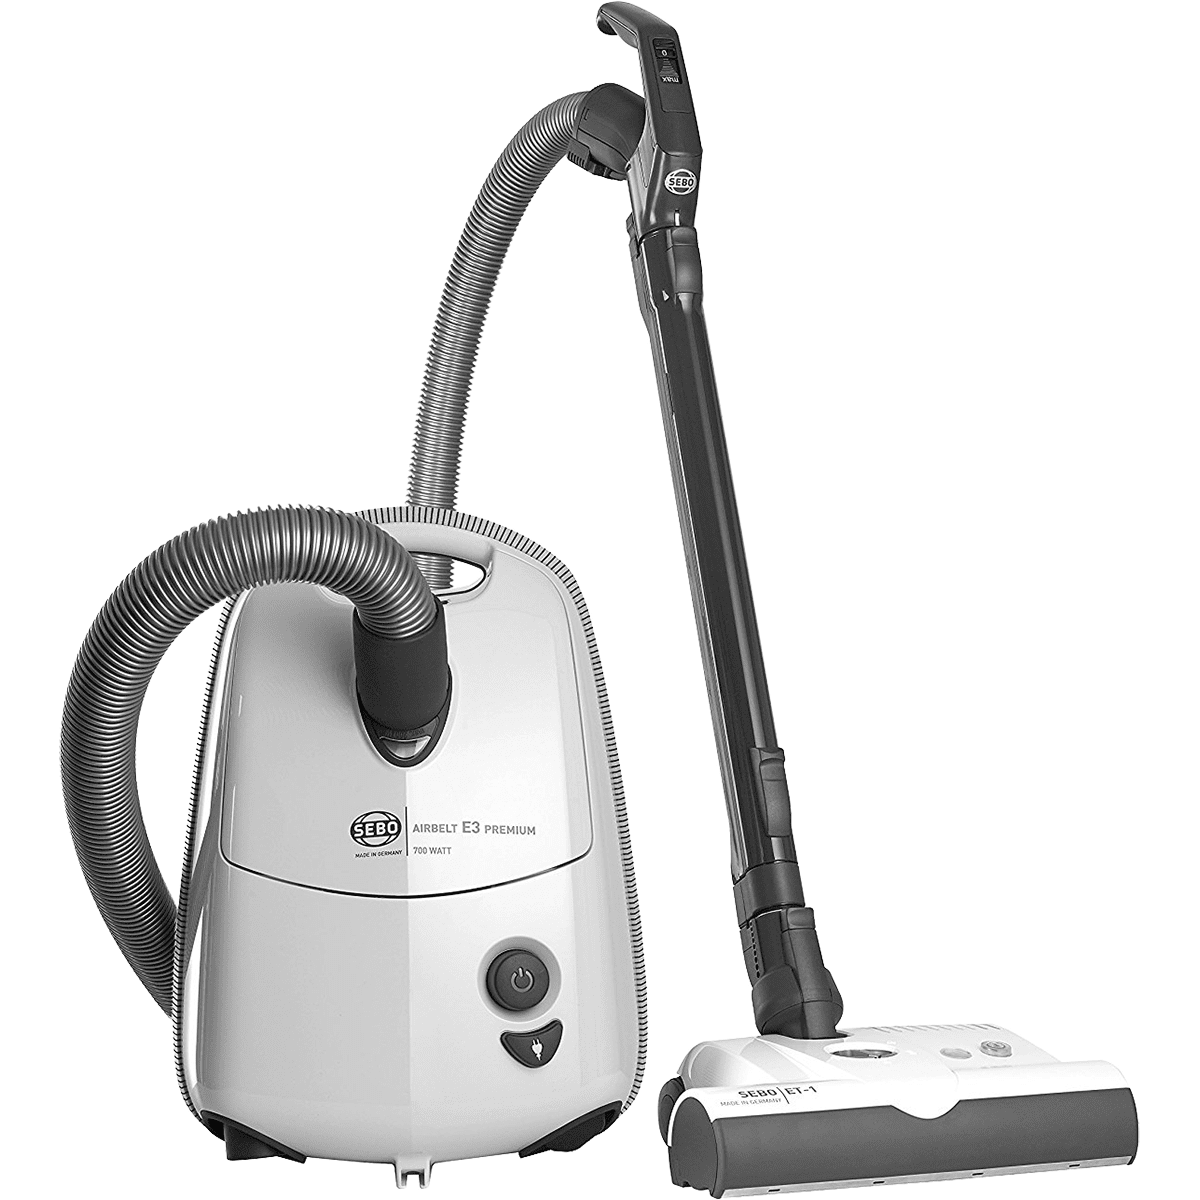 SEBO Airbelt E3 Premium Canister Vacuum - White